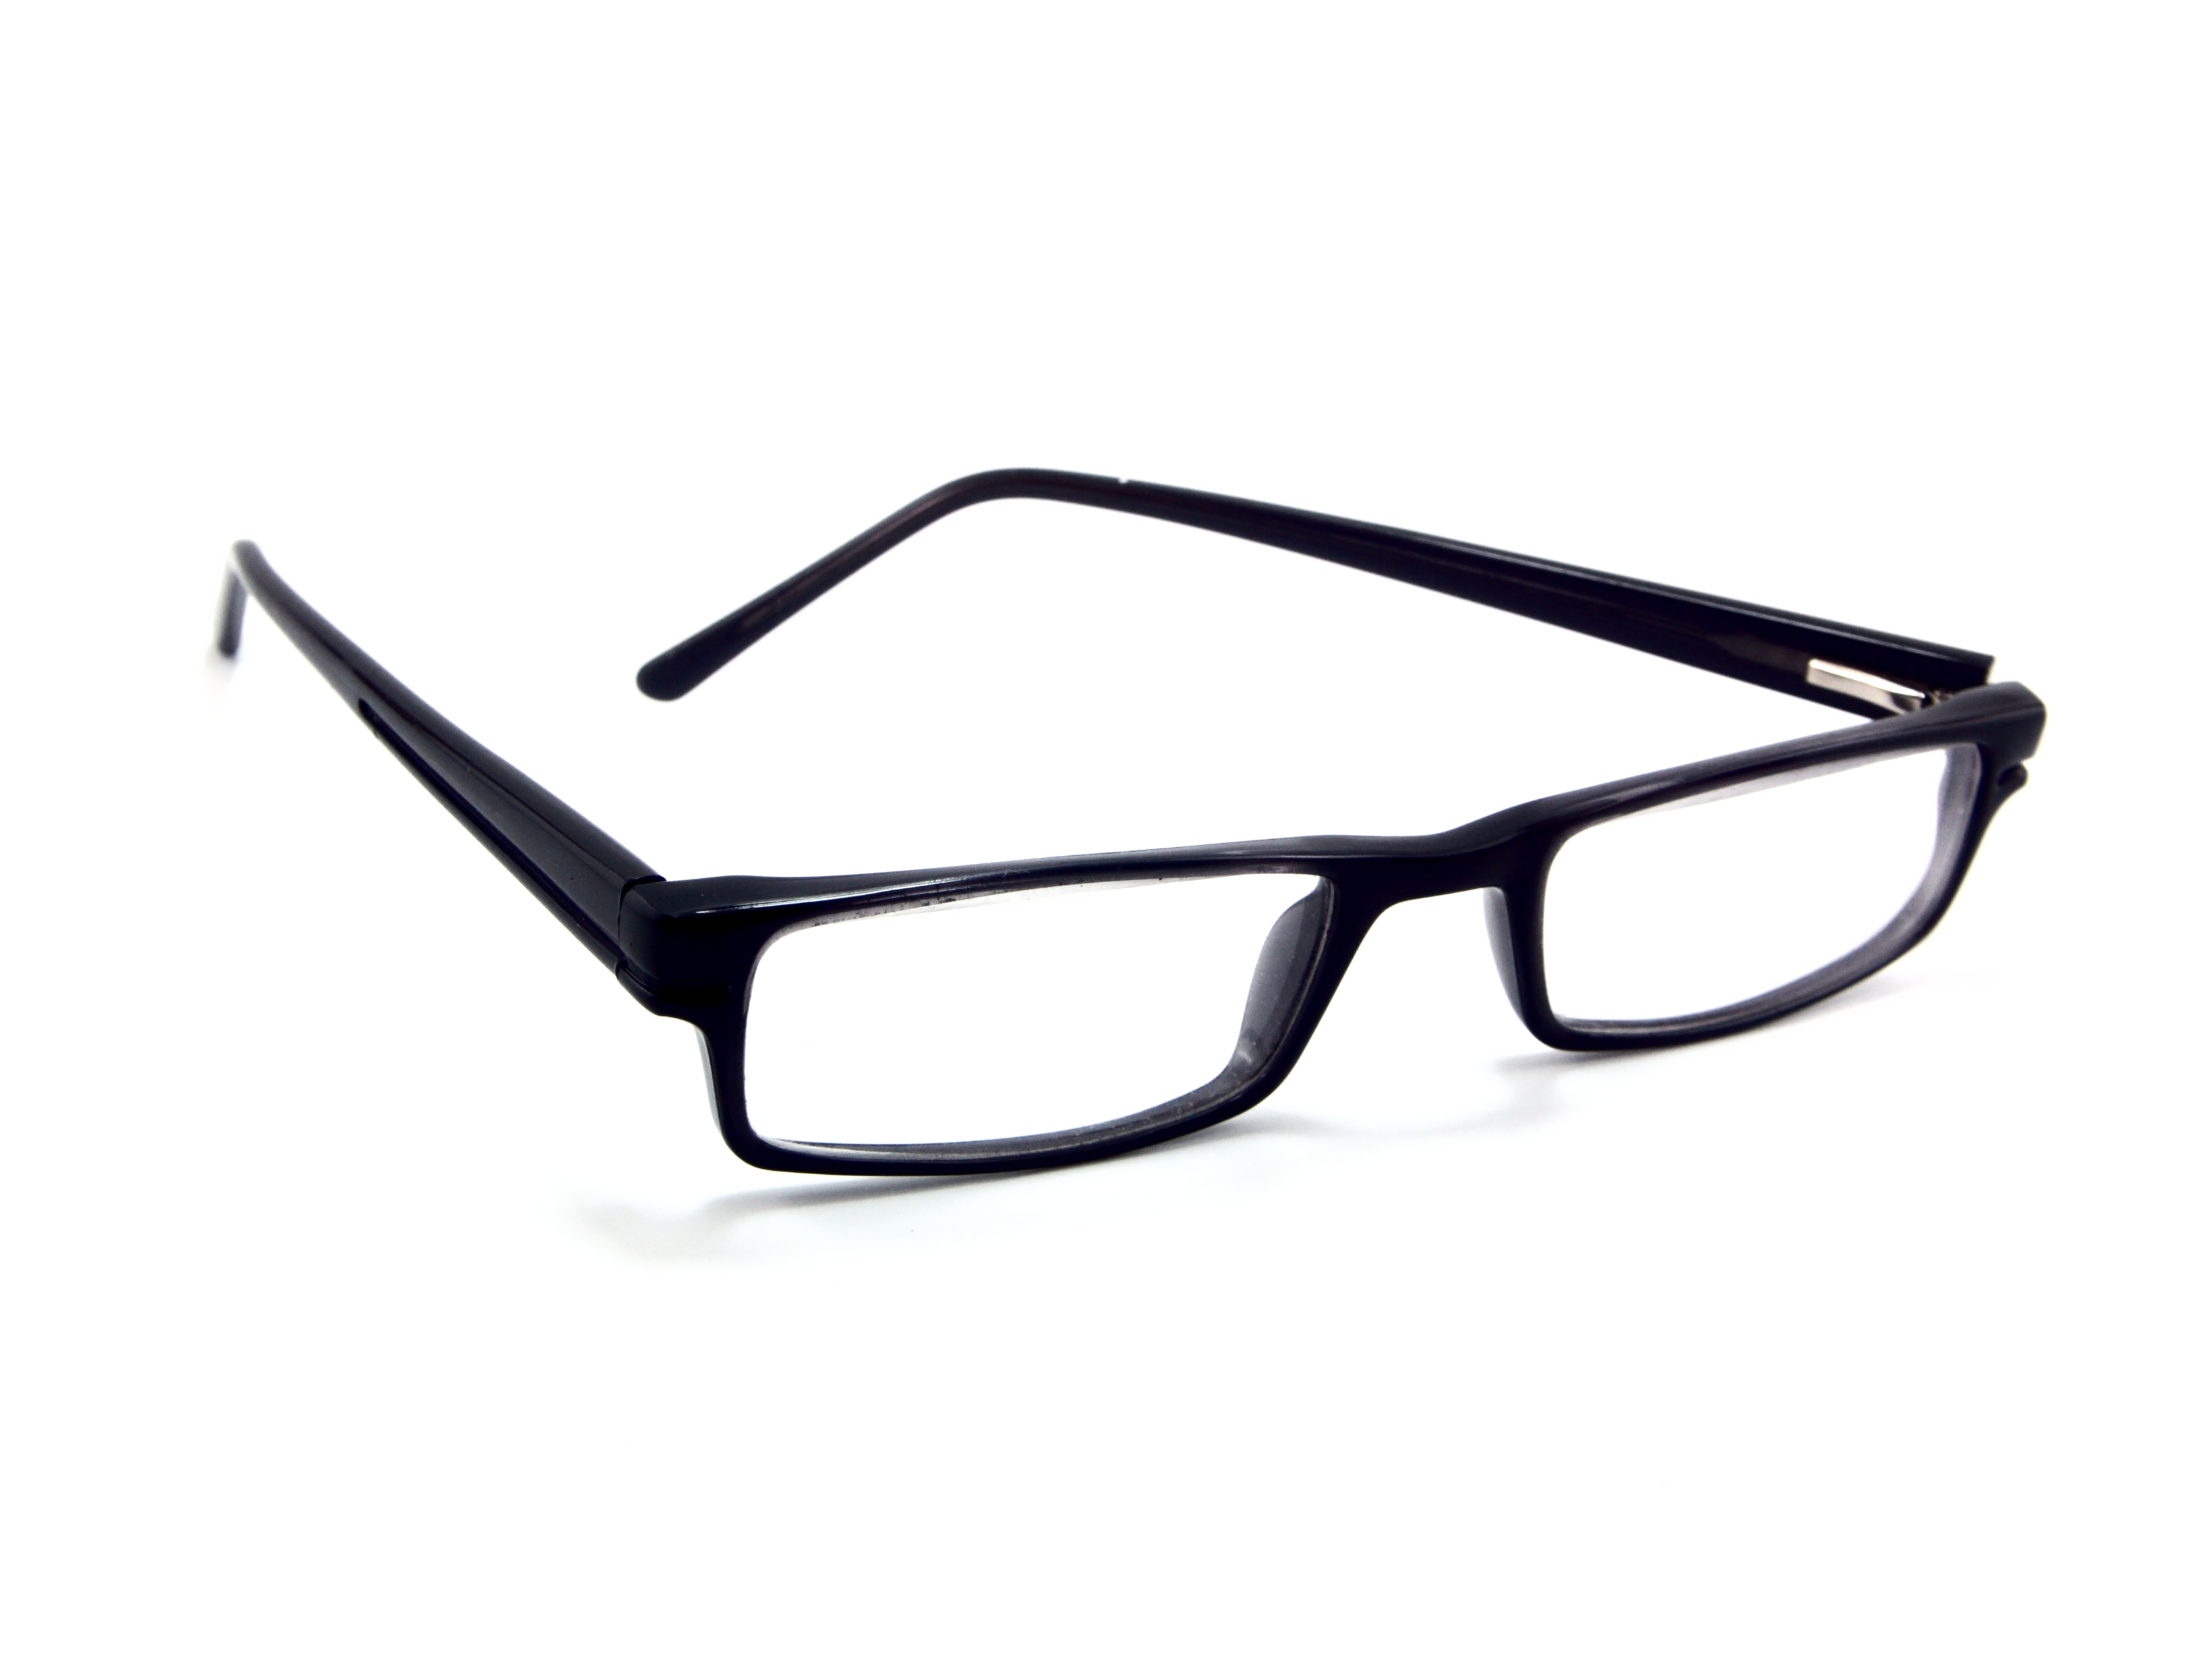 Free photo: Eyeglasses - White, Shining, Optical - Free Download - Jooinn